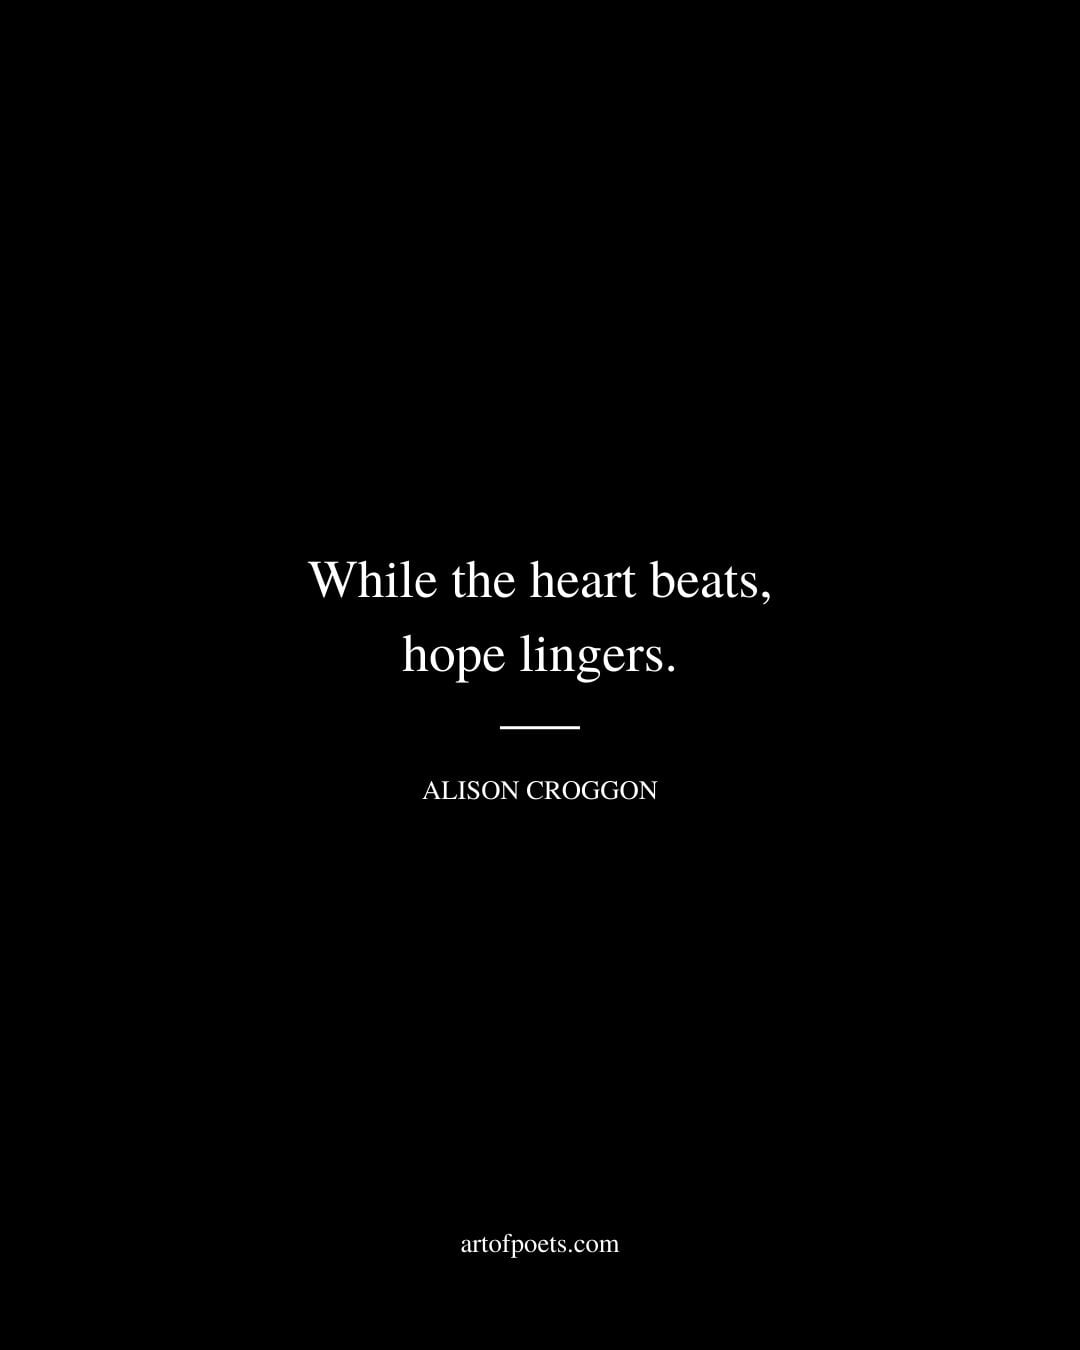 While the heart beats hope lingers. Alison Croggon